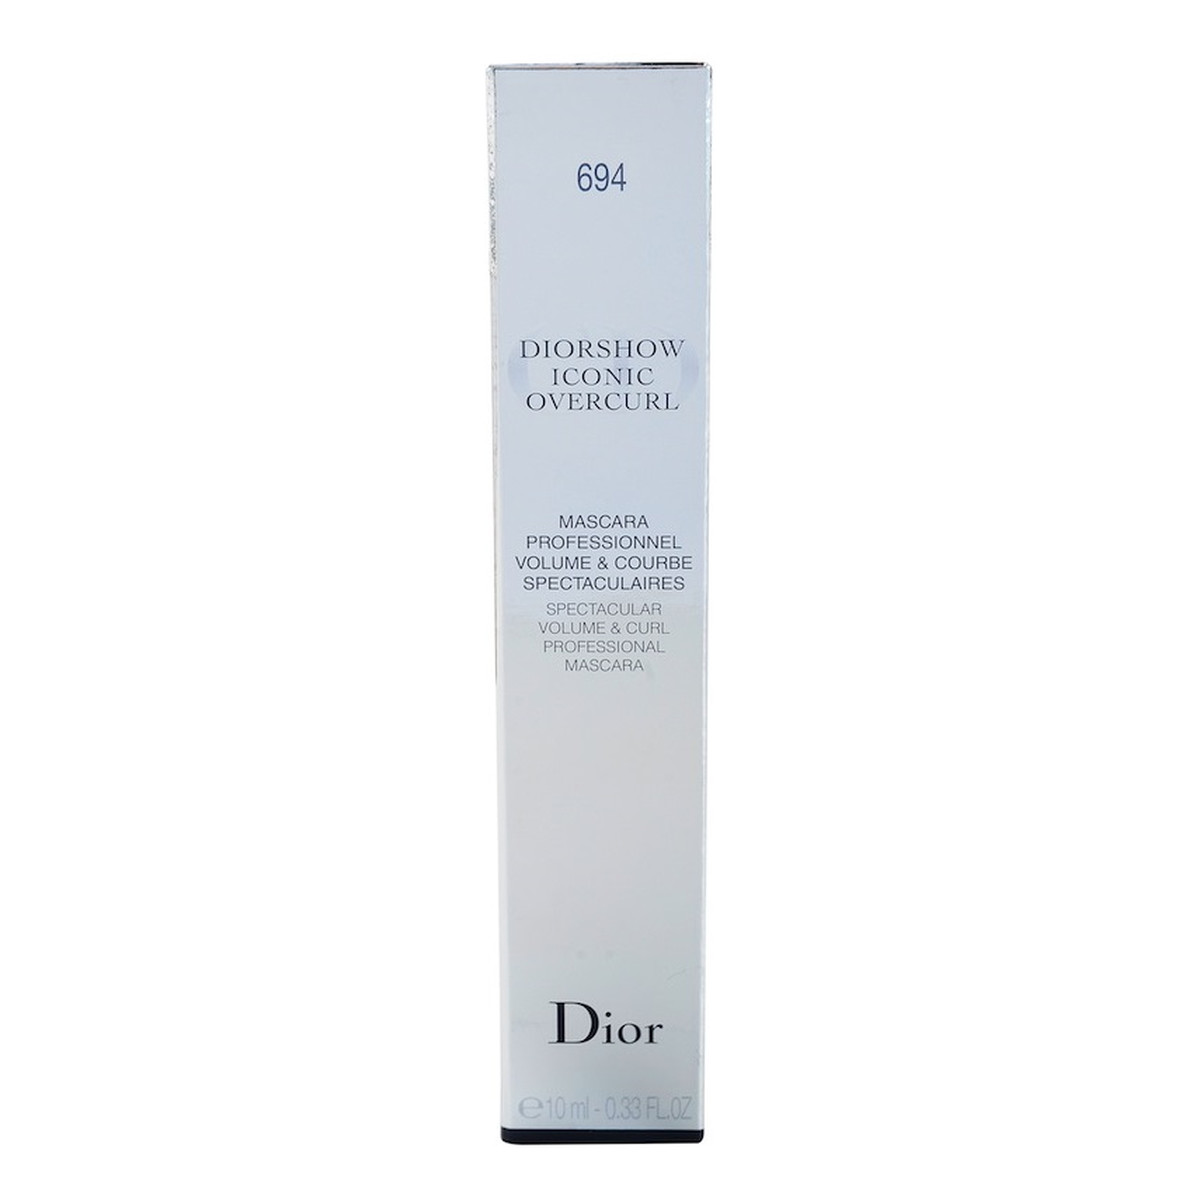 Dior Diorshow Iconic Overcurl Tusz do rzęs zwiększający objętość i podkręcający (Spectacular Volume & Curl Professional Mascara) 10ml